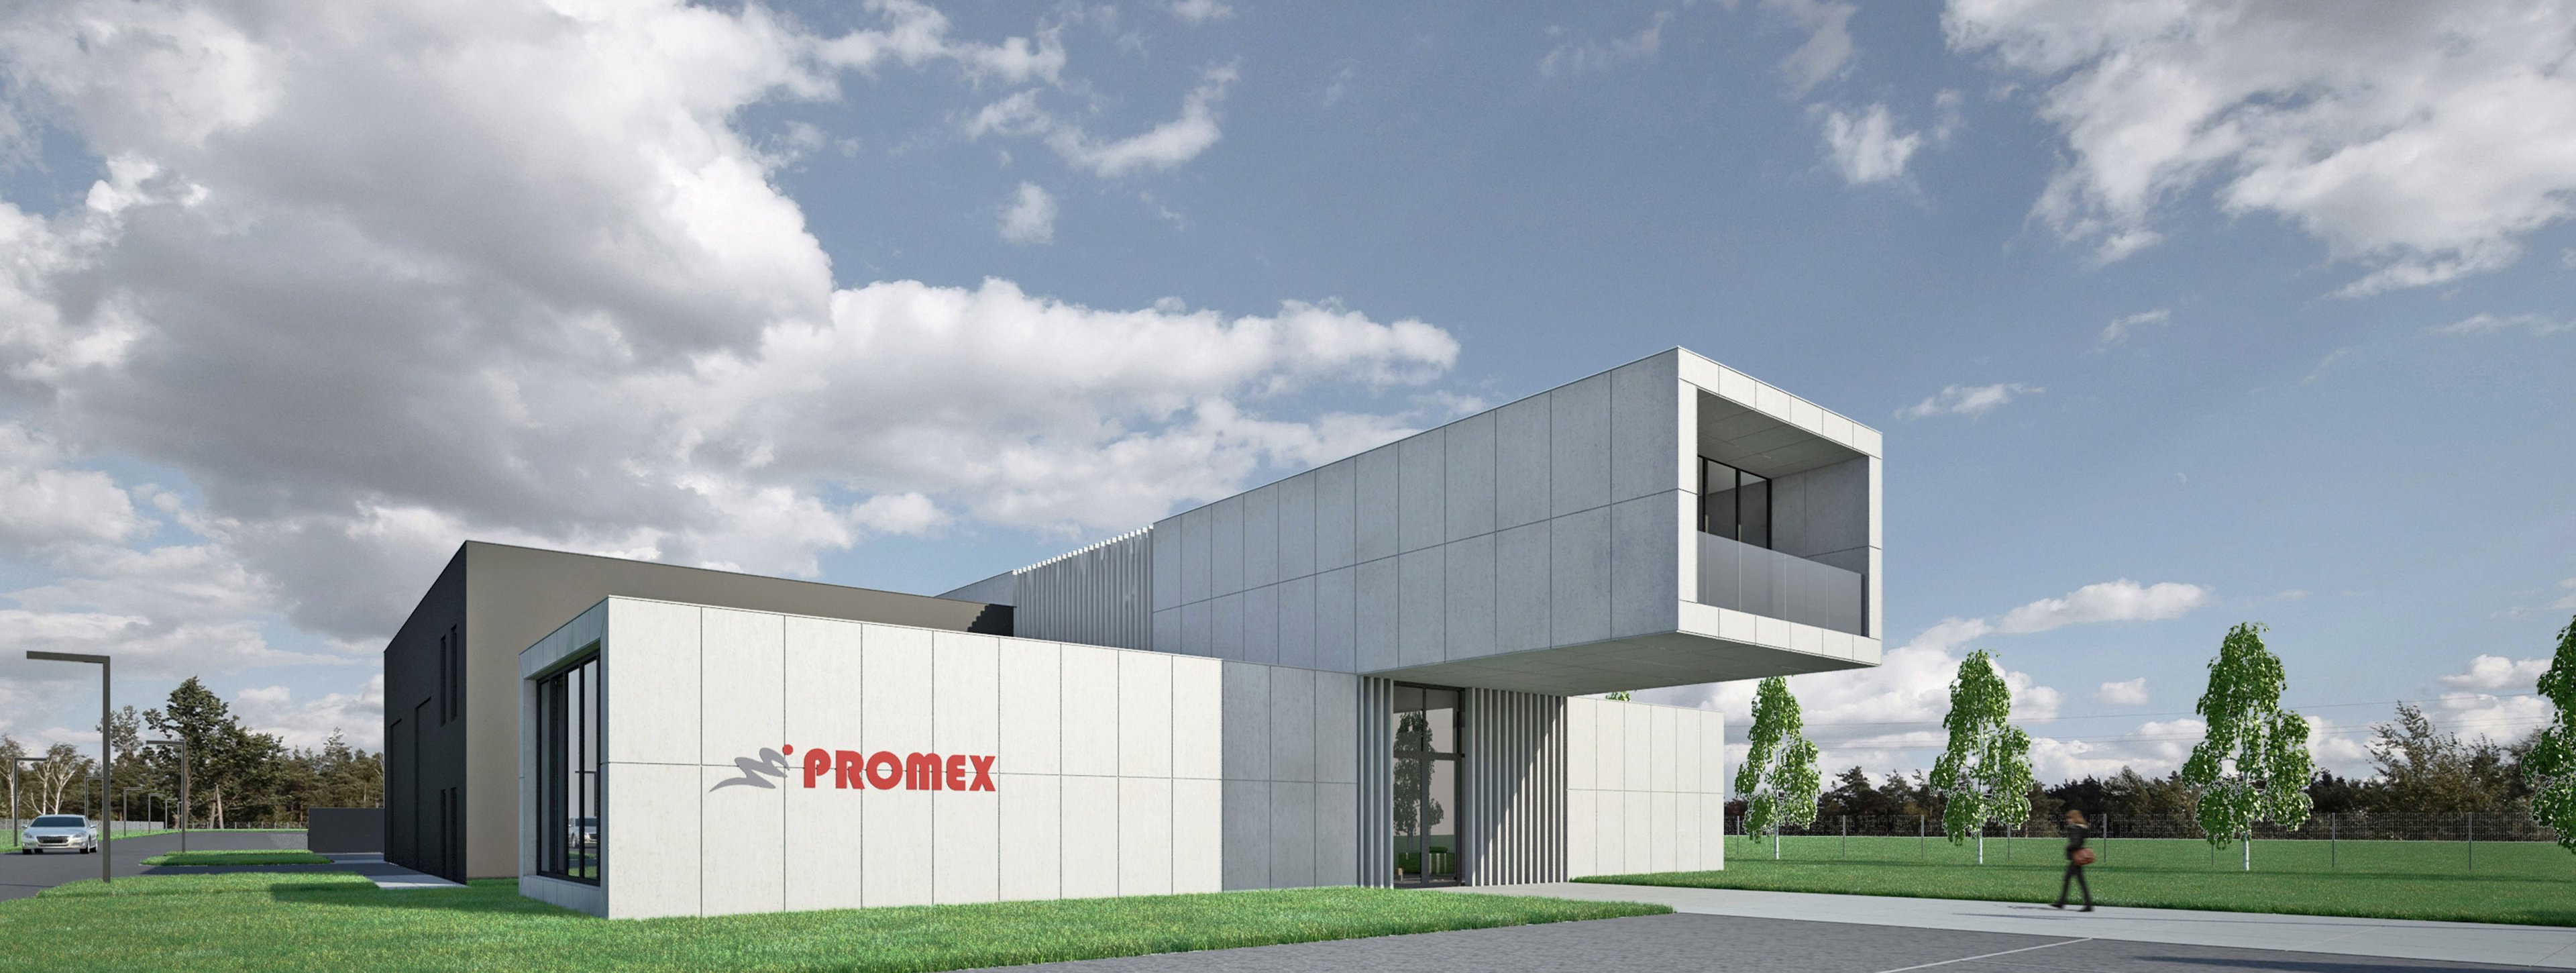 Promex - siedziba firmy